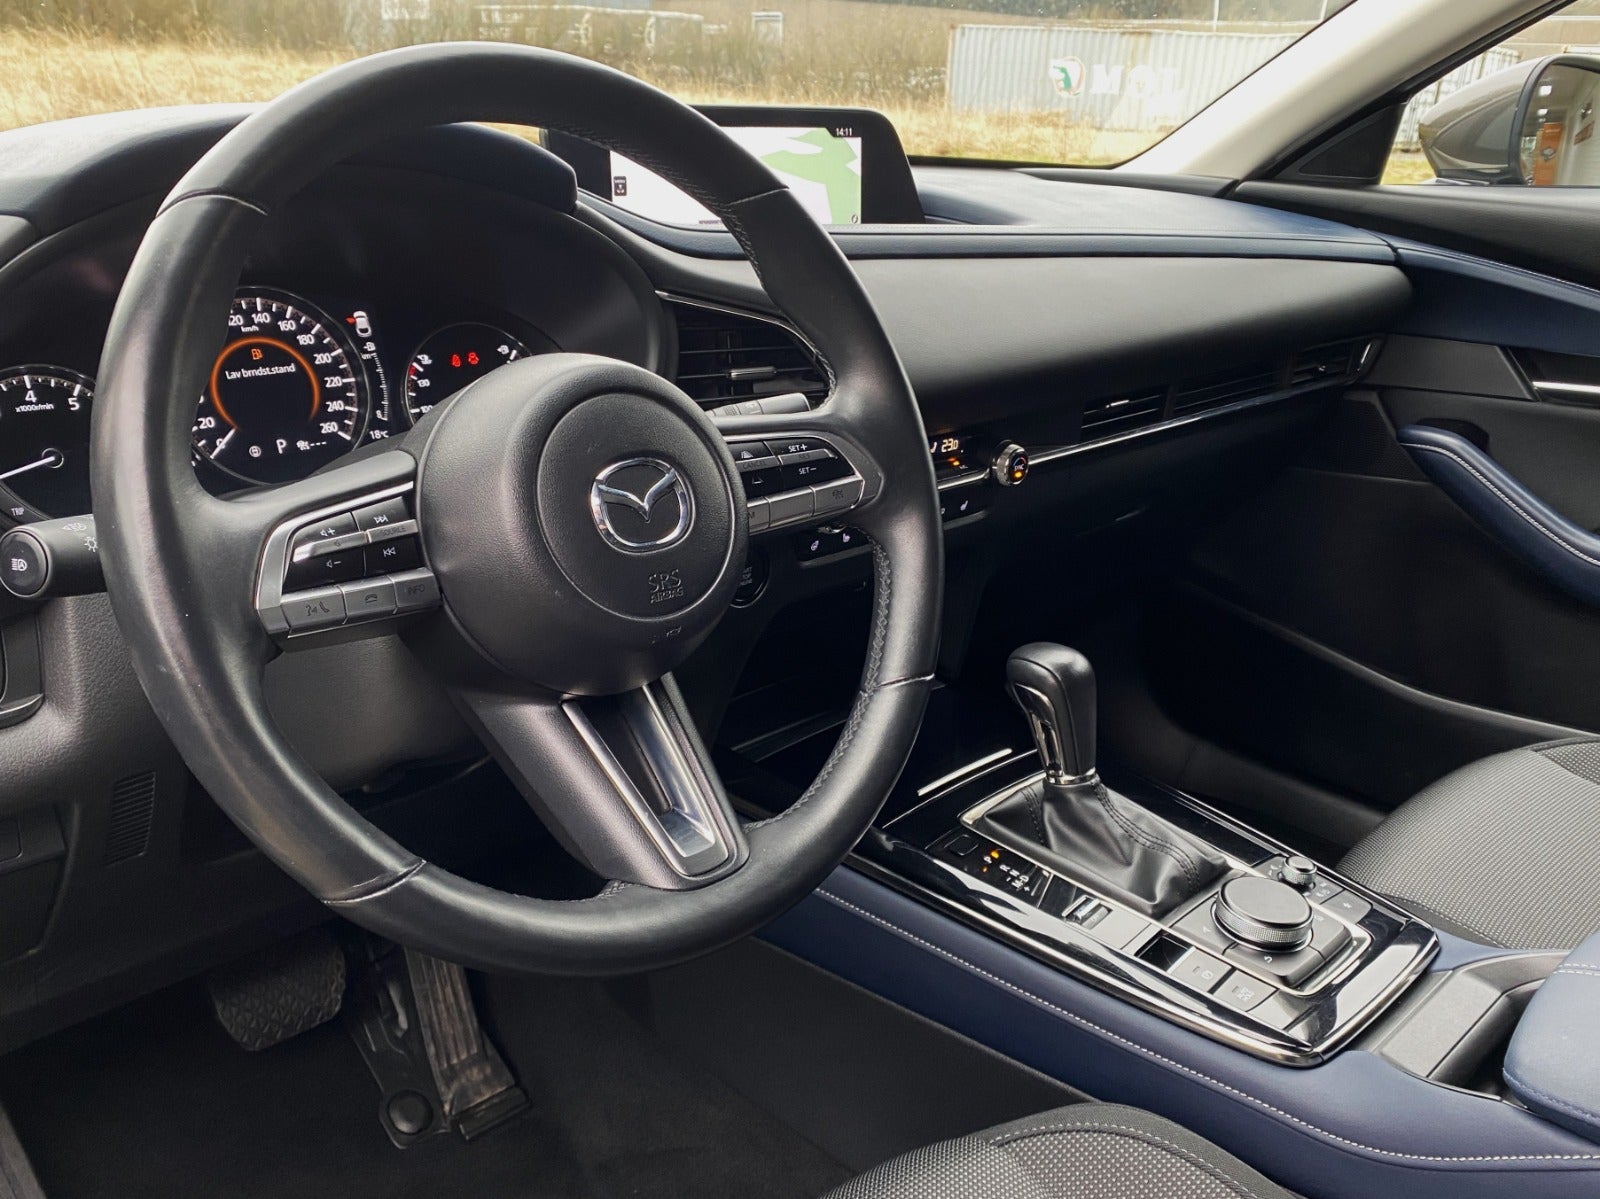 Mazda CX-30 2019